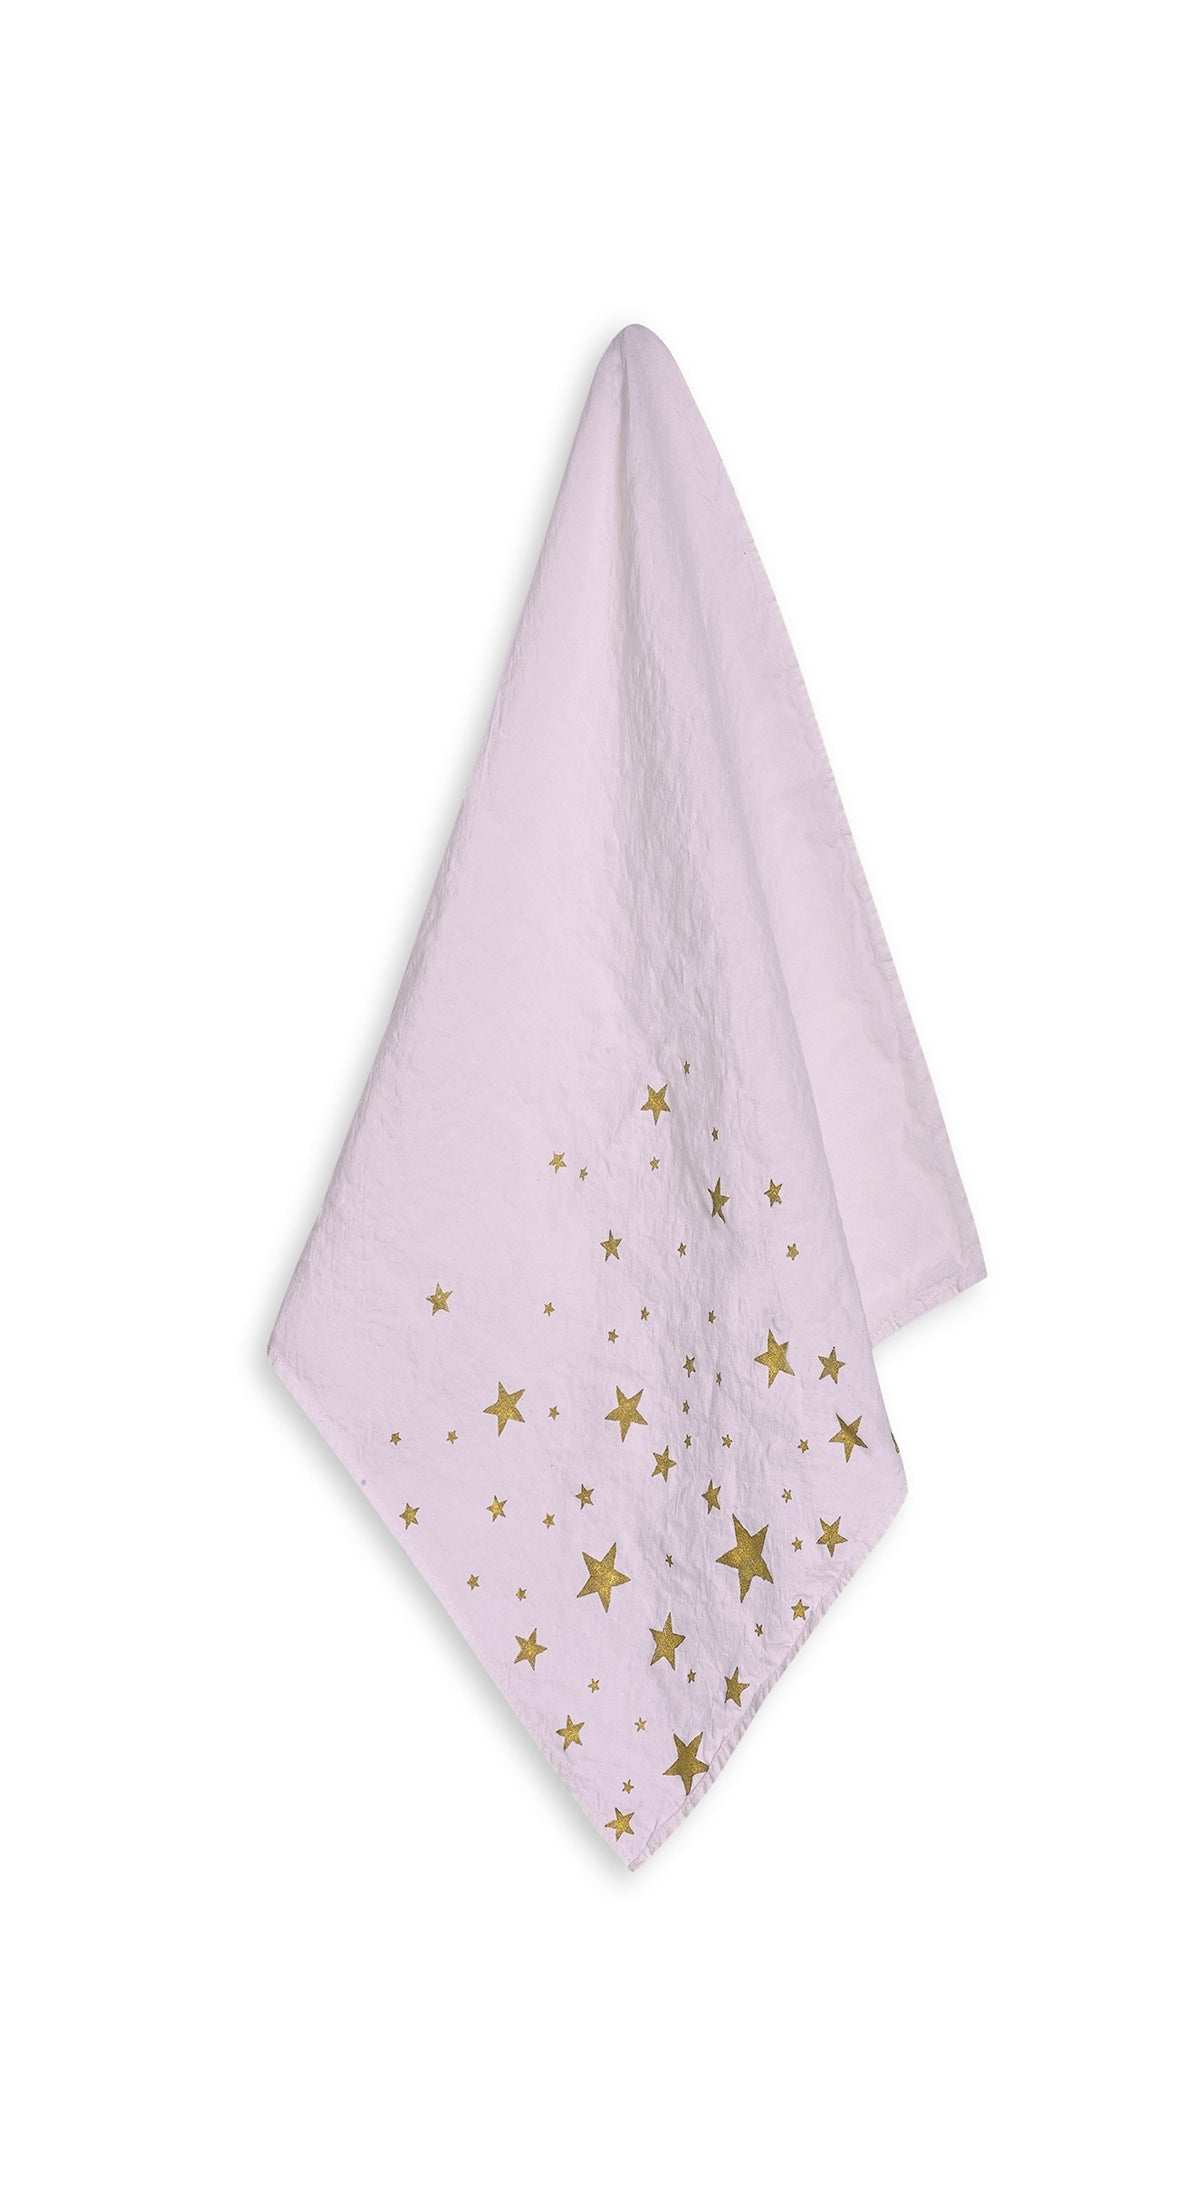 Falling Stars Linen Napkin in Light Pink, 50x50cm